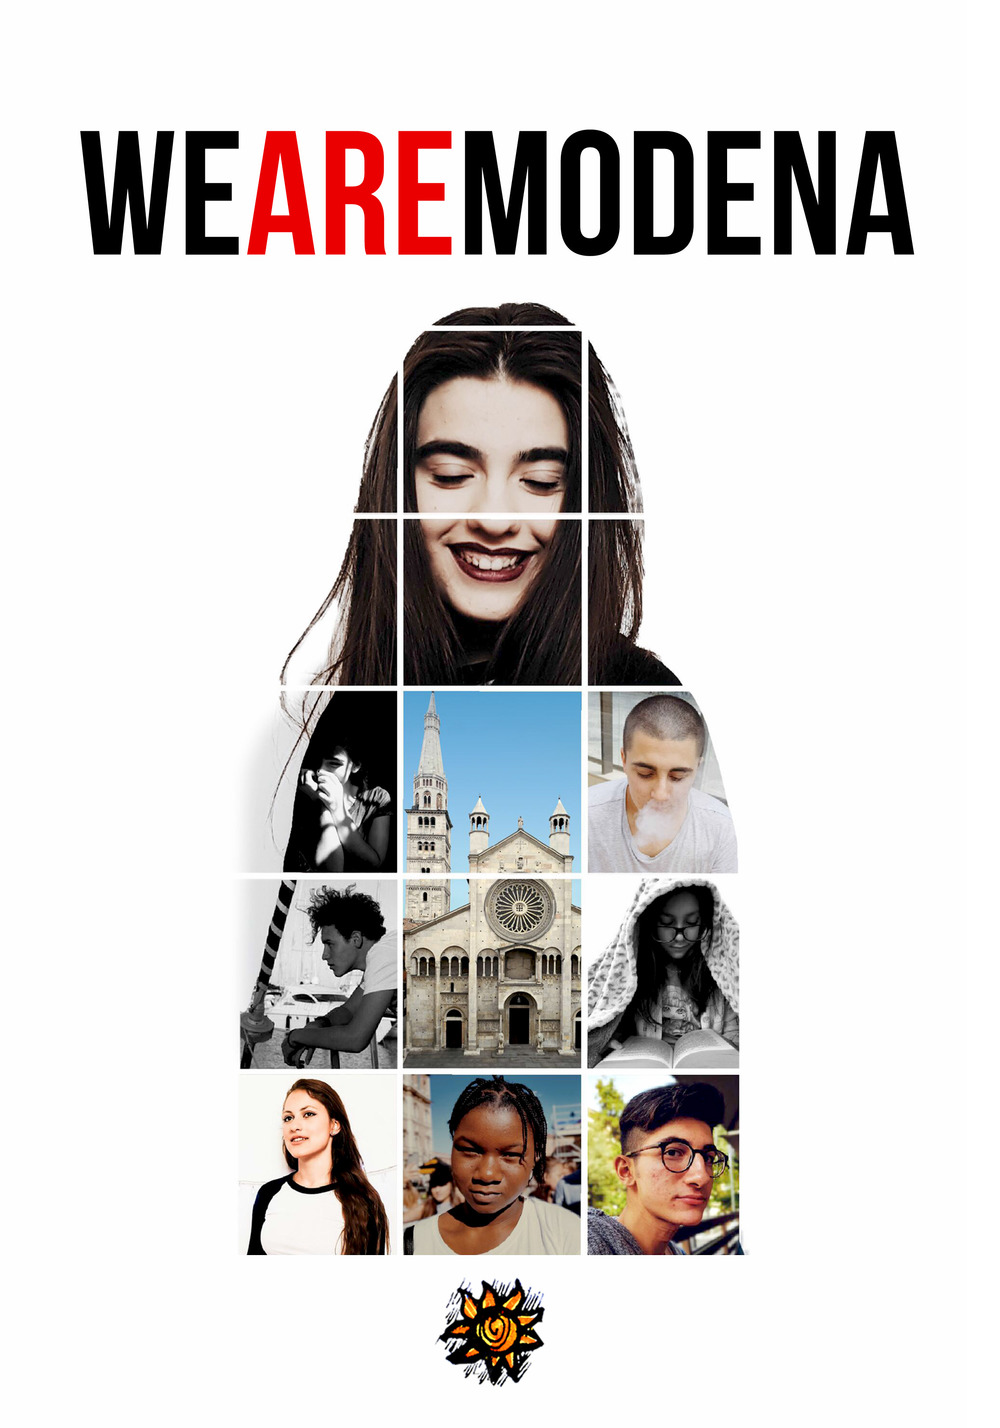 We are Modena. Insieme, i sogni diventano realtà